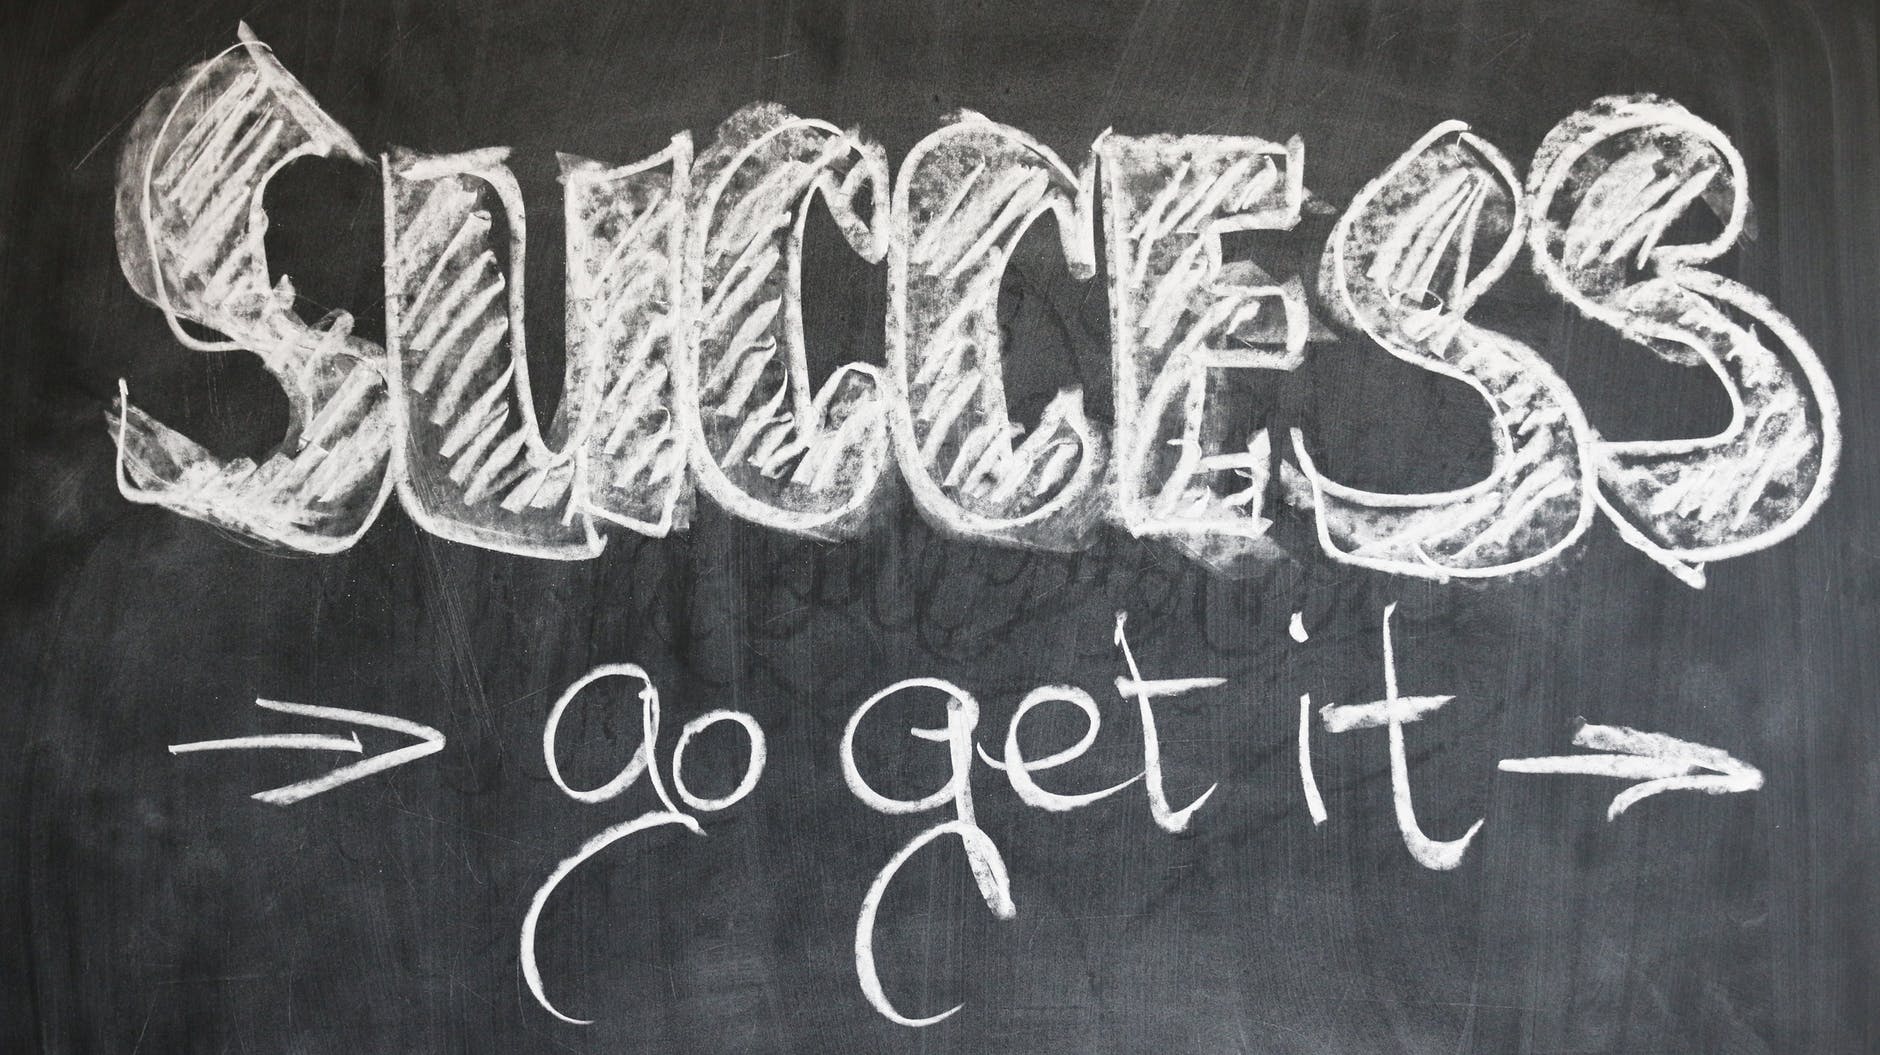 the words 'success, go get it' written on a chalkboard